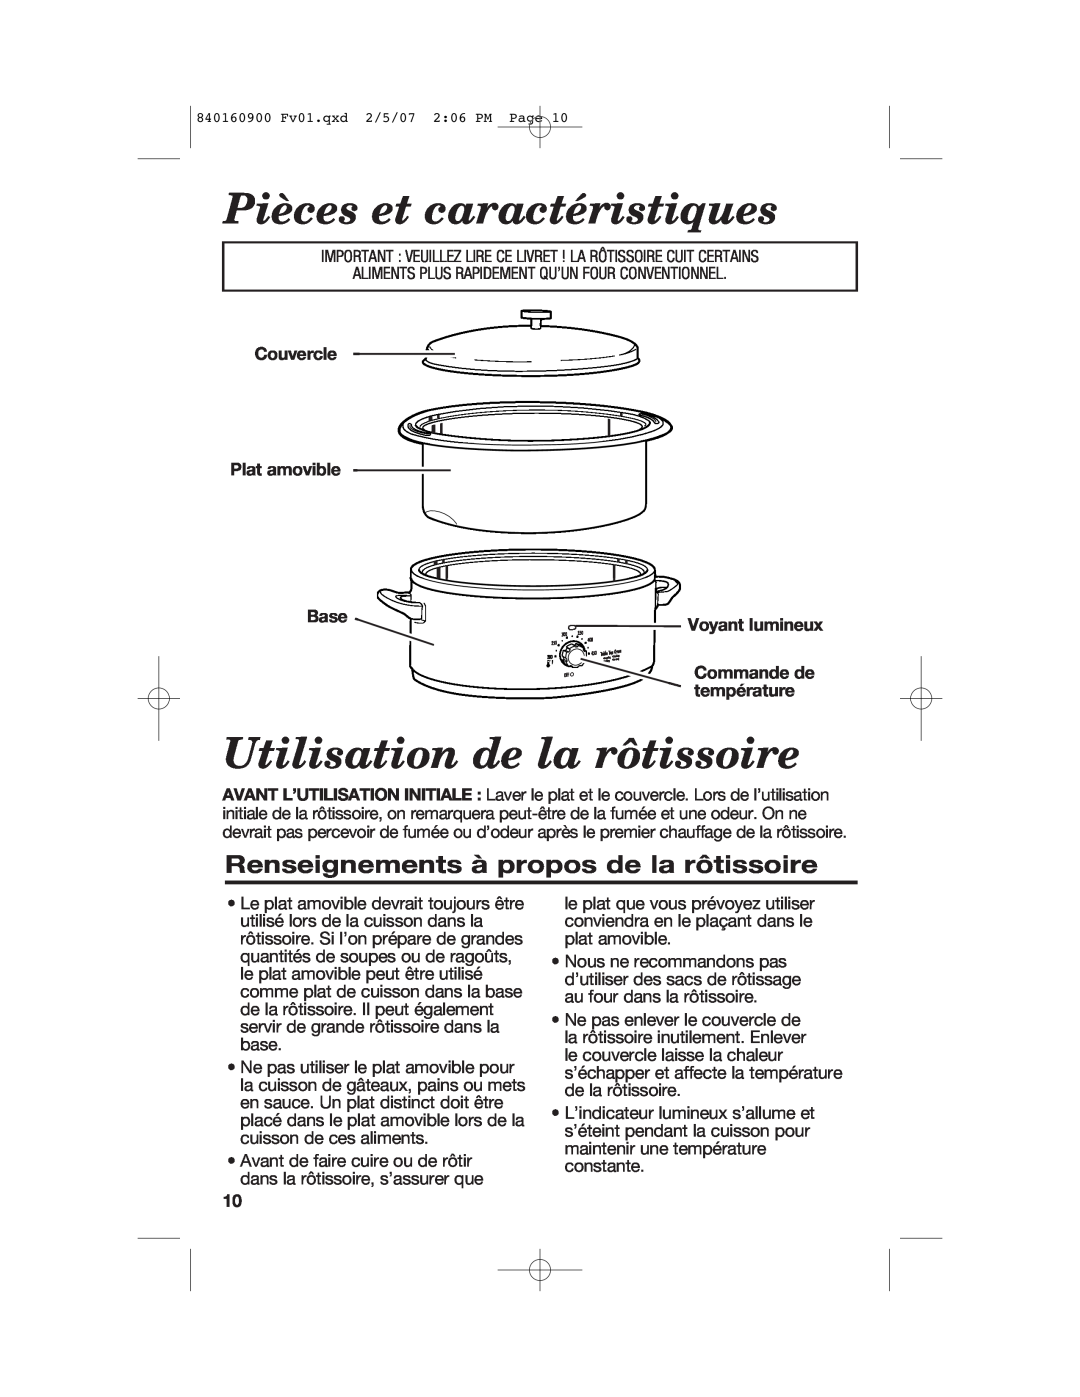 Proctor-Silex Roaster Oven manual Pièces et caractéristiques, Utilisation de la rôtissoire, Couvercle Plat amovible, Base 